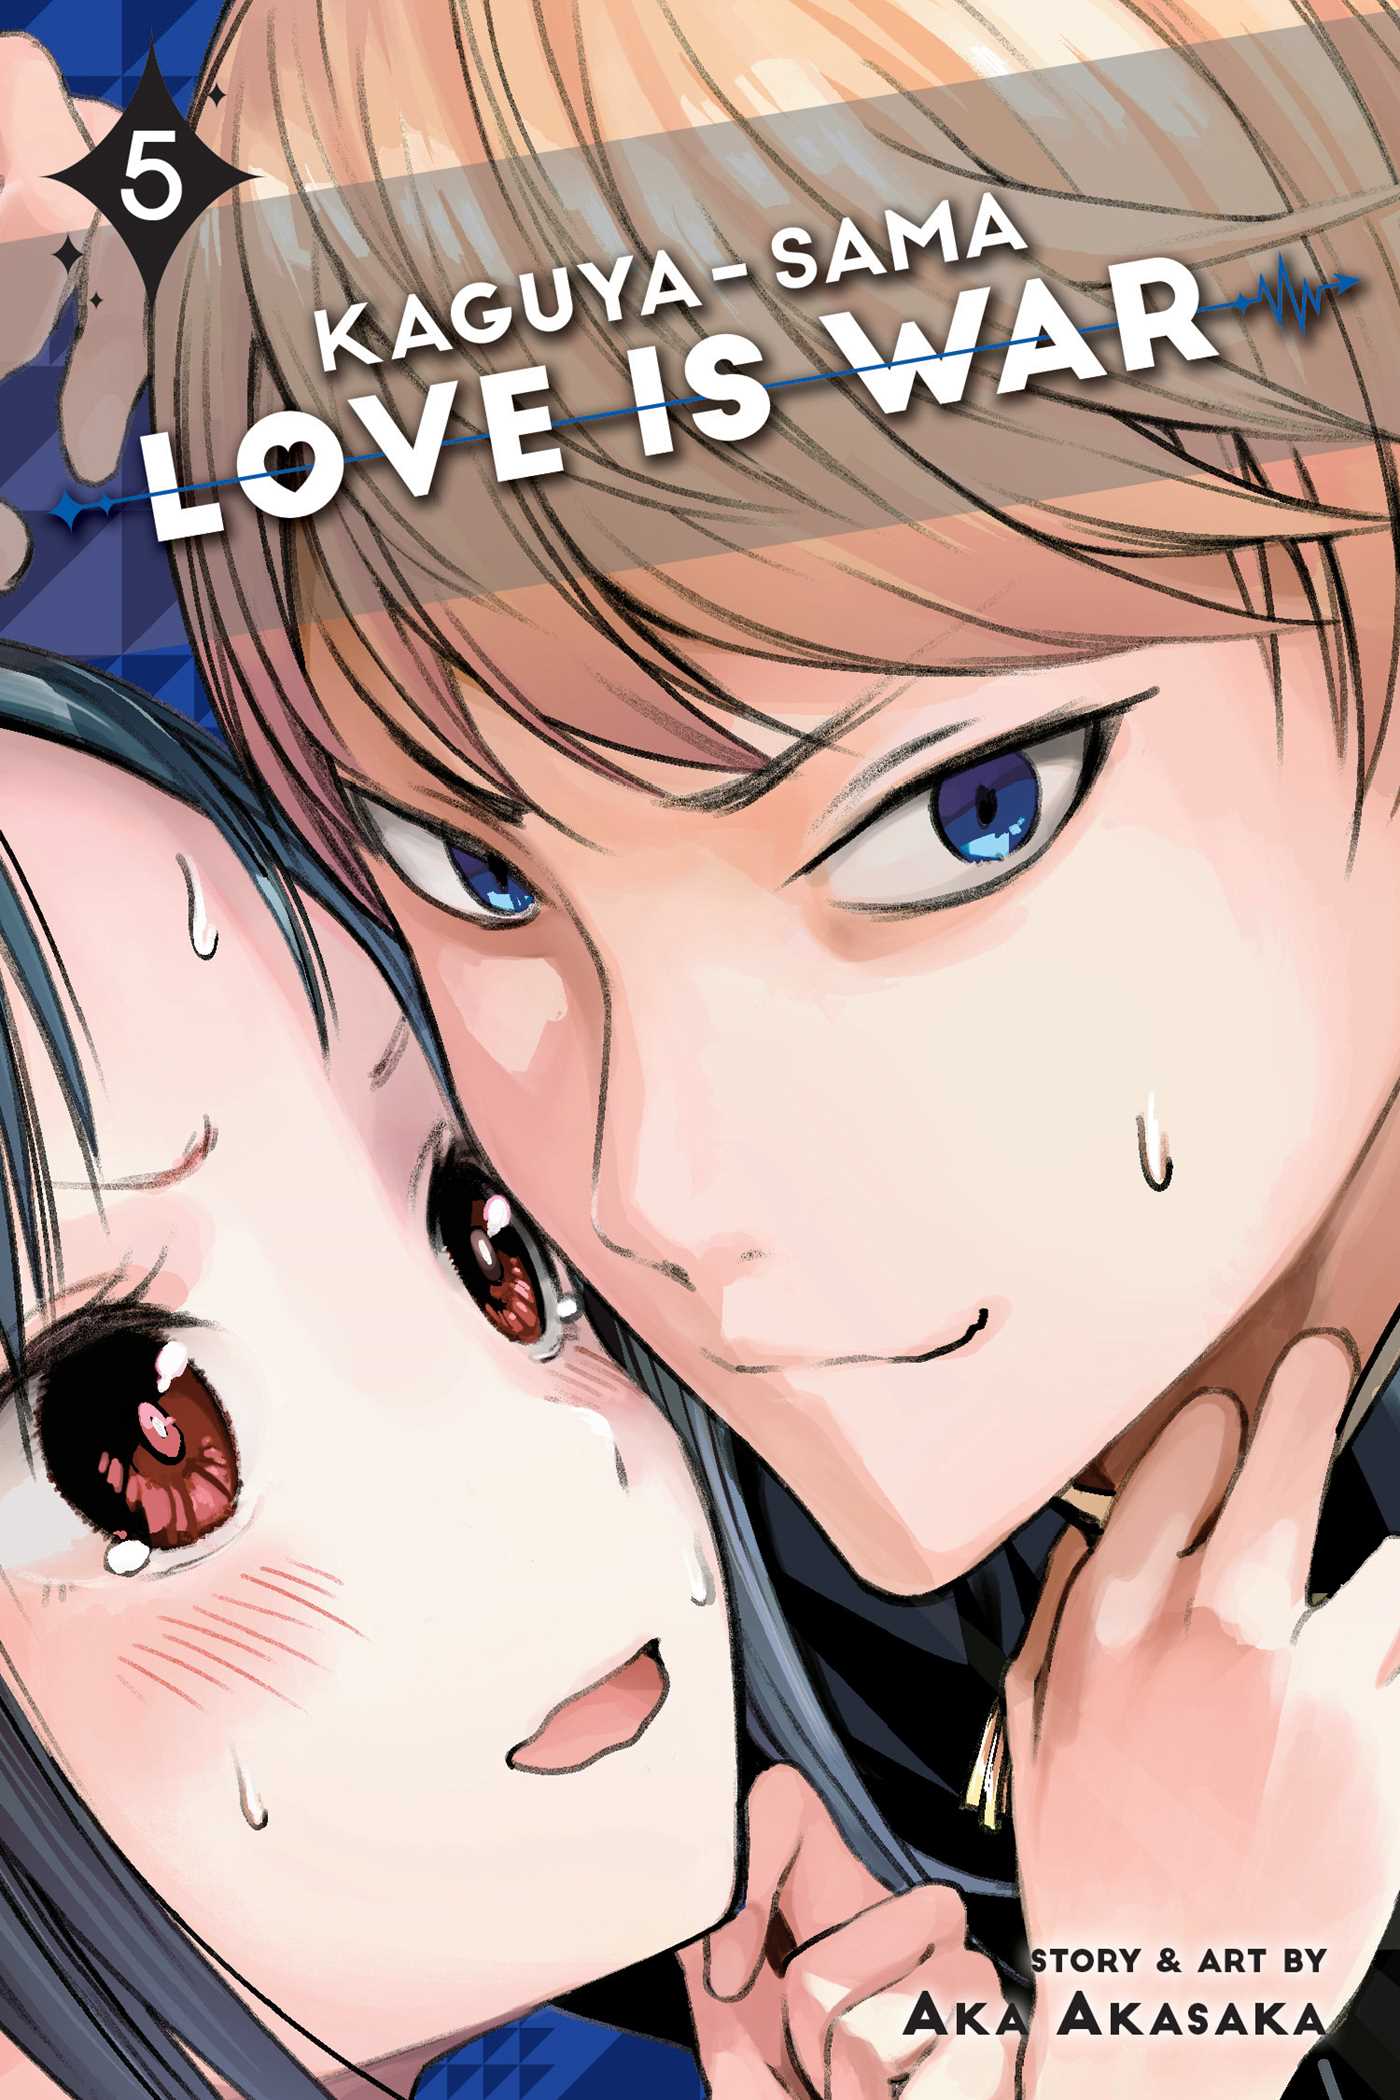 Kaguya-sama: Love Is War, Vol. 5 - Manga Warehouse